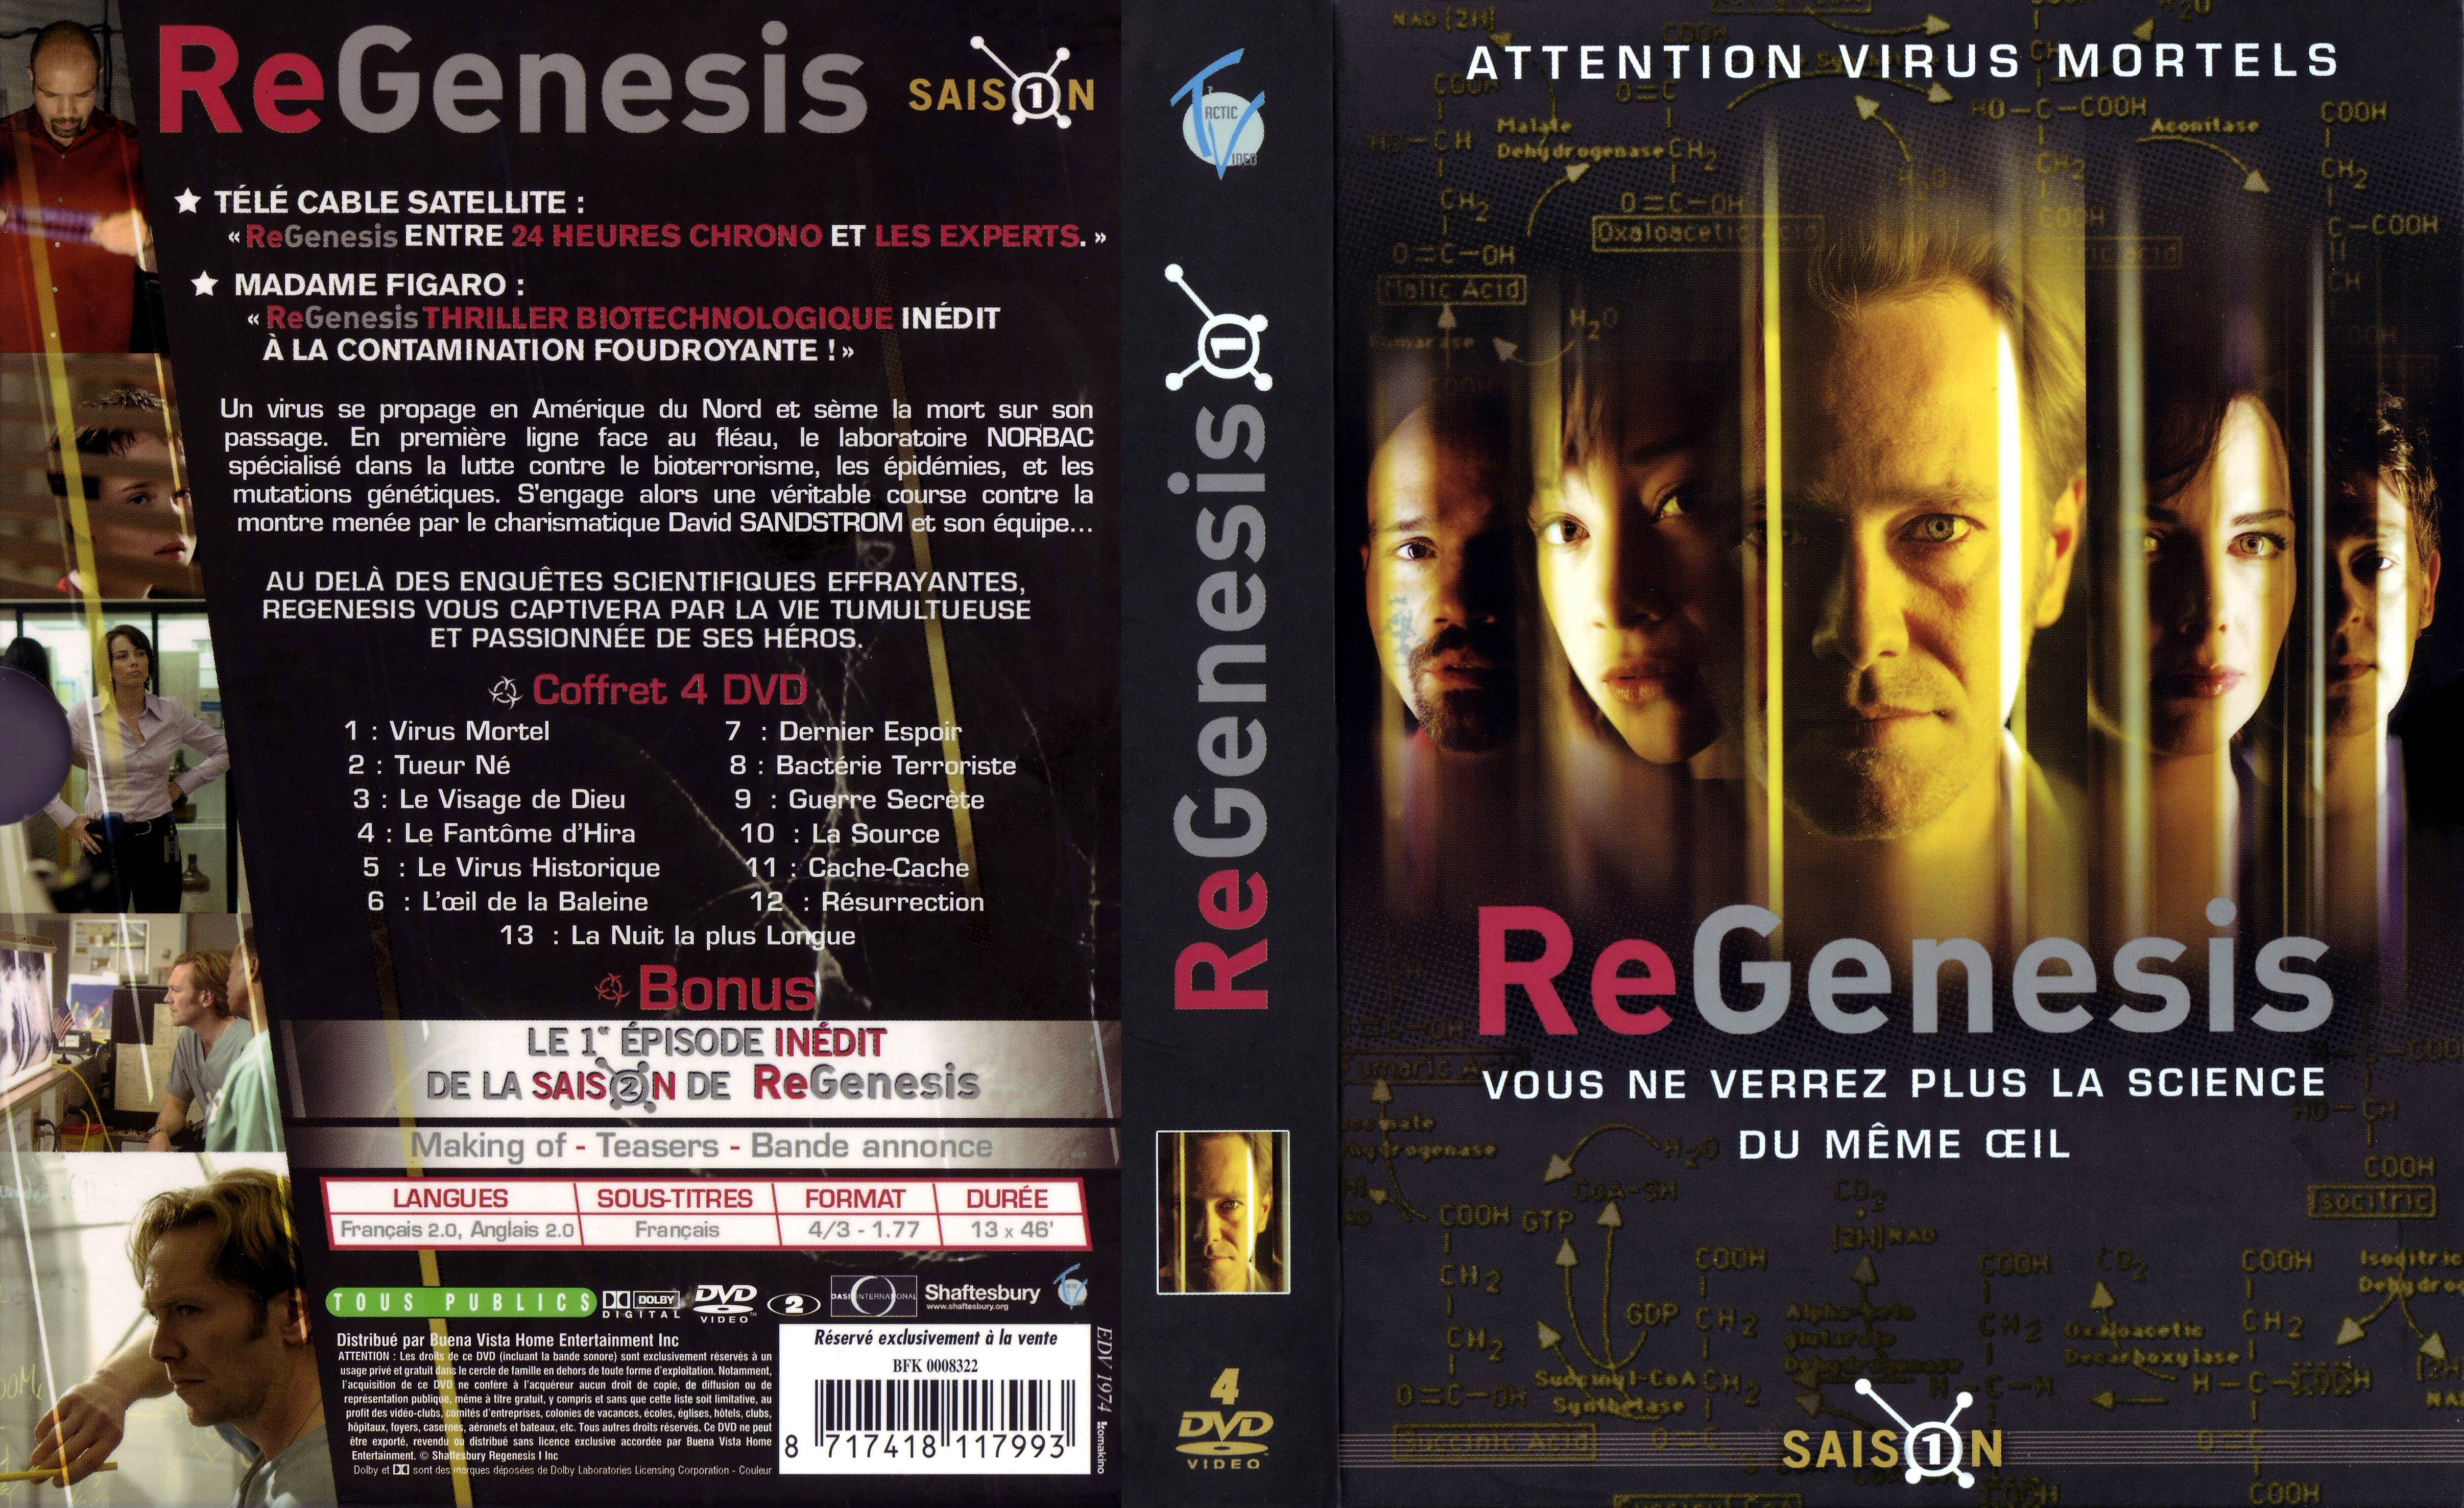 Jaquette DVD ReGenesis saison 1 COFFRET